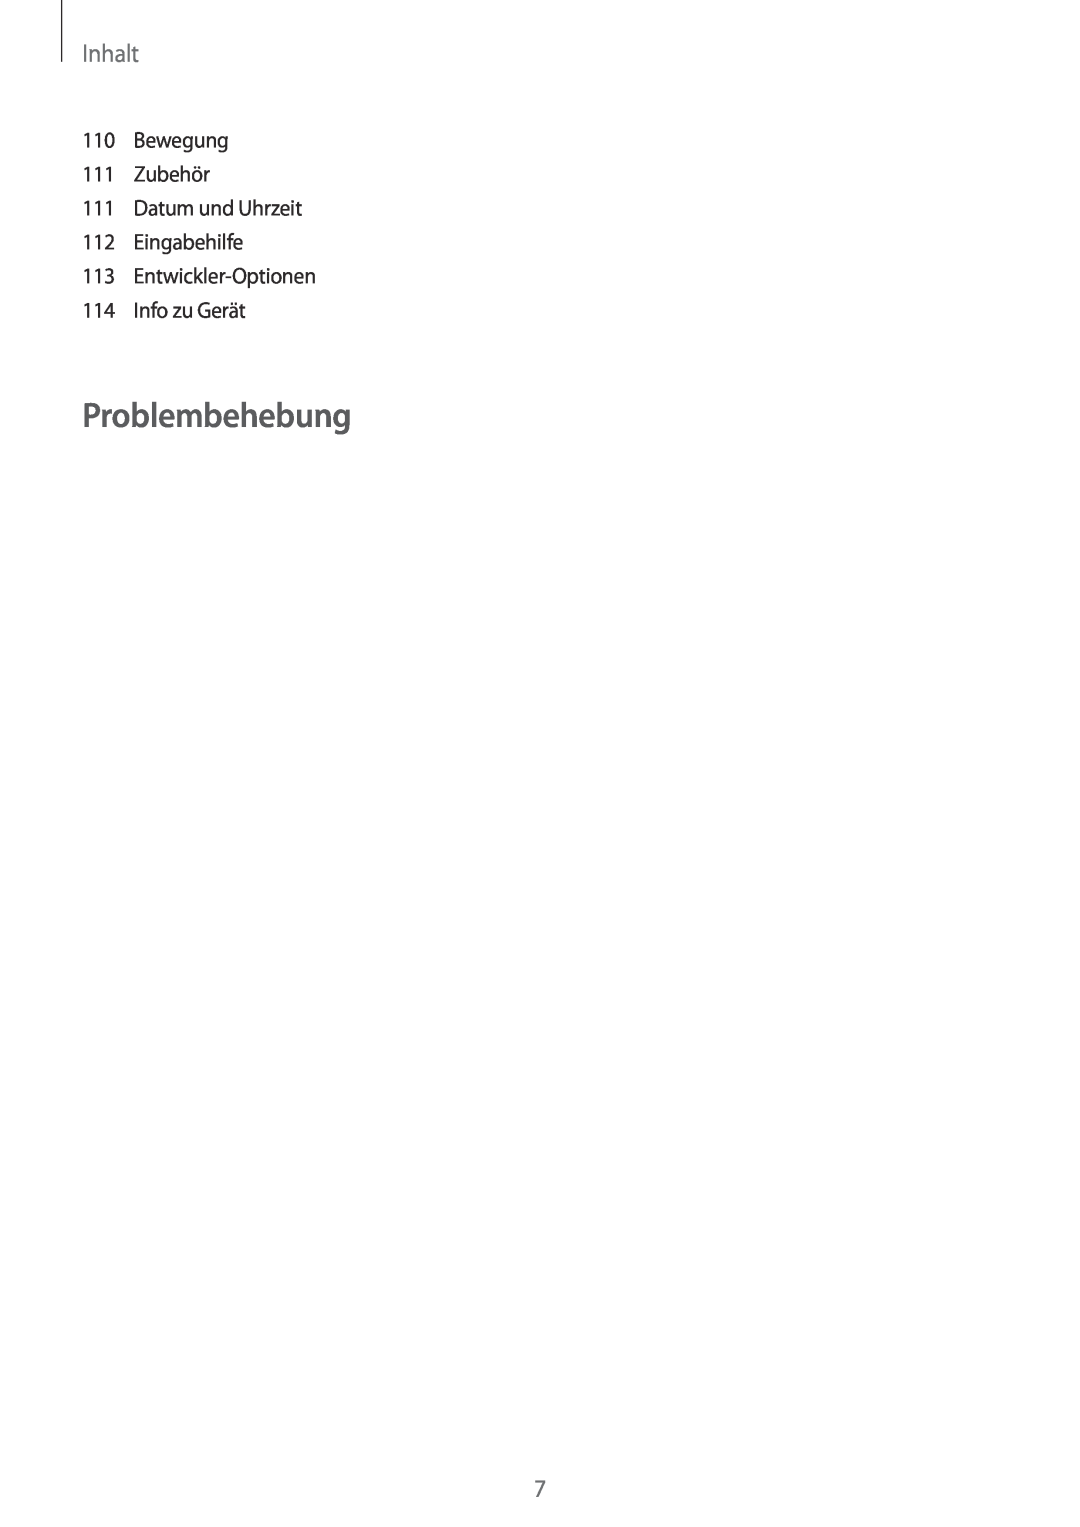 Samsung GT-I8190TAATUR manual Problembehebung, Inhalt, Bewegung 111 Zubehör 111 Datum und Uhrzeit 112 Eingabehilfe 